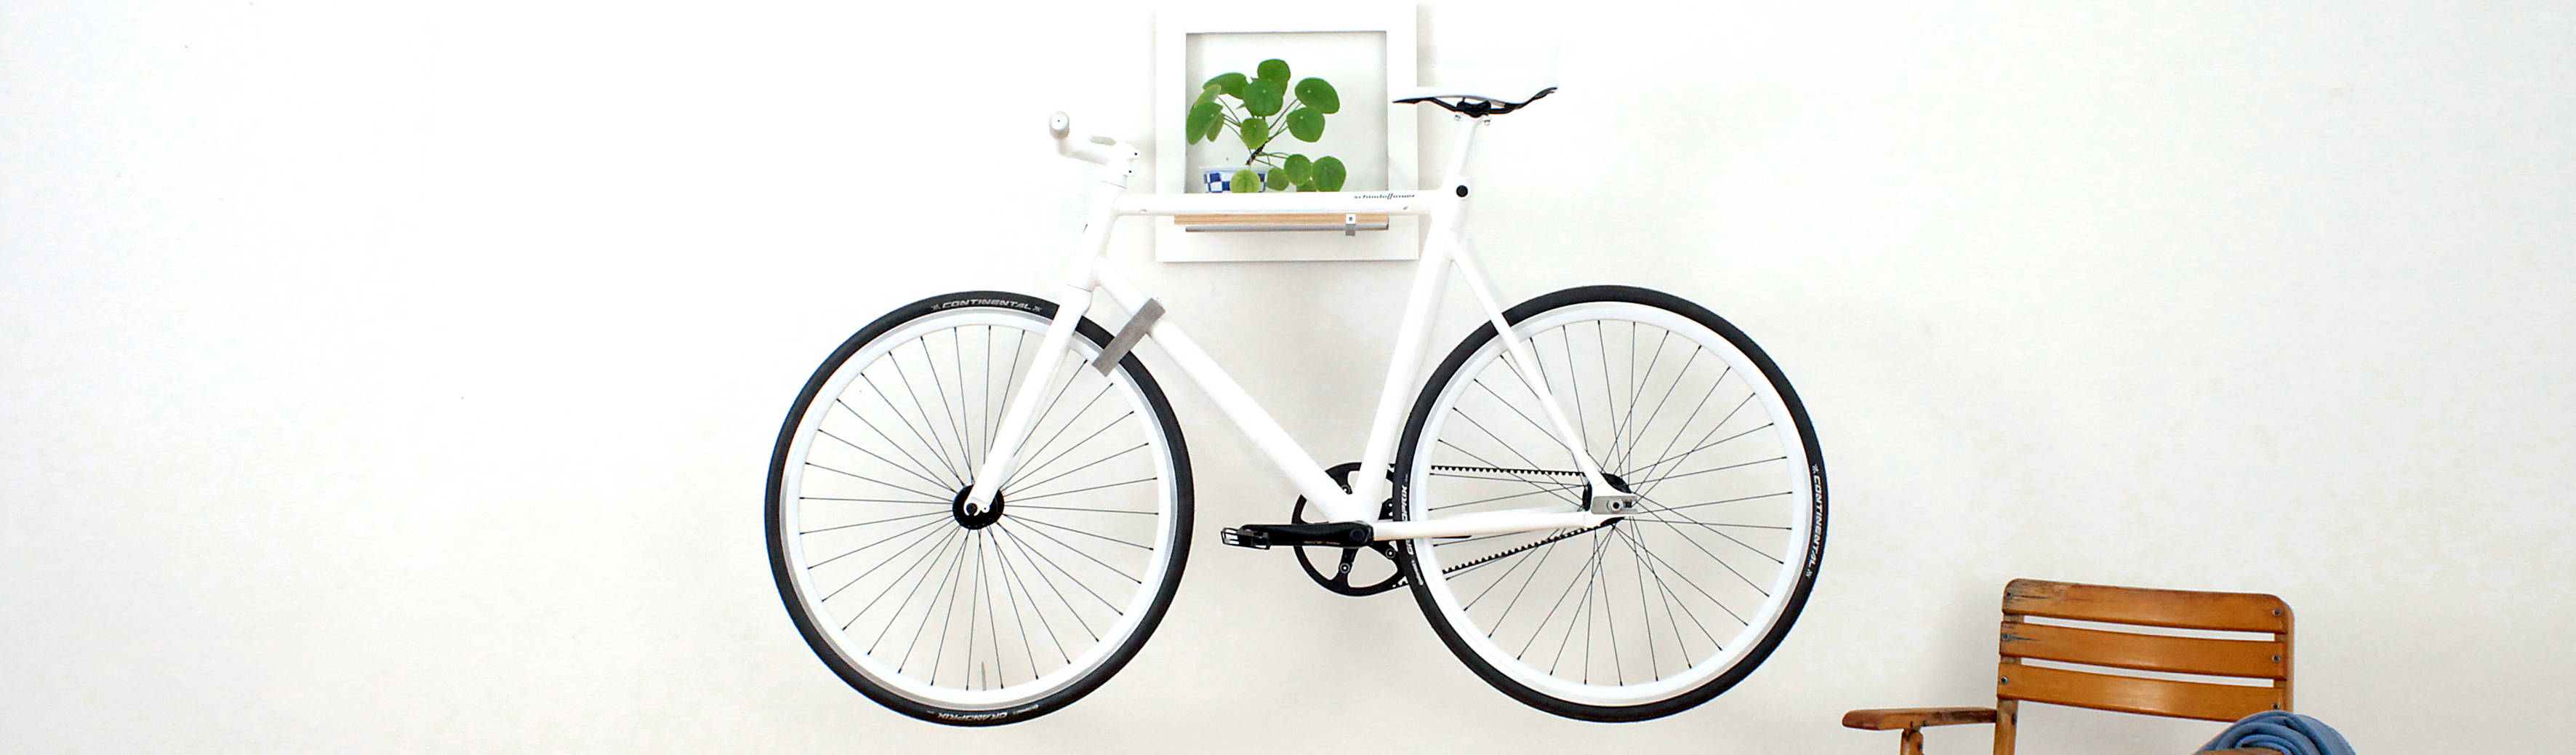 MIKILI – Bicycle Furniture